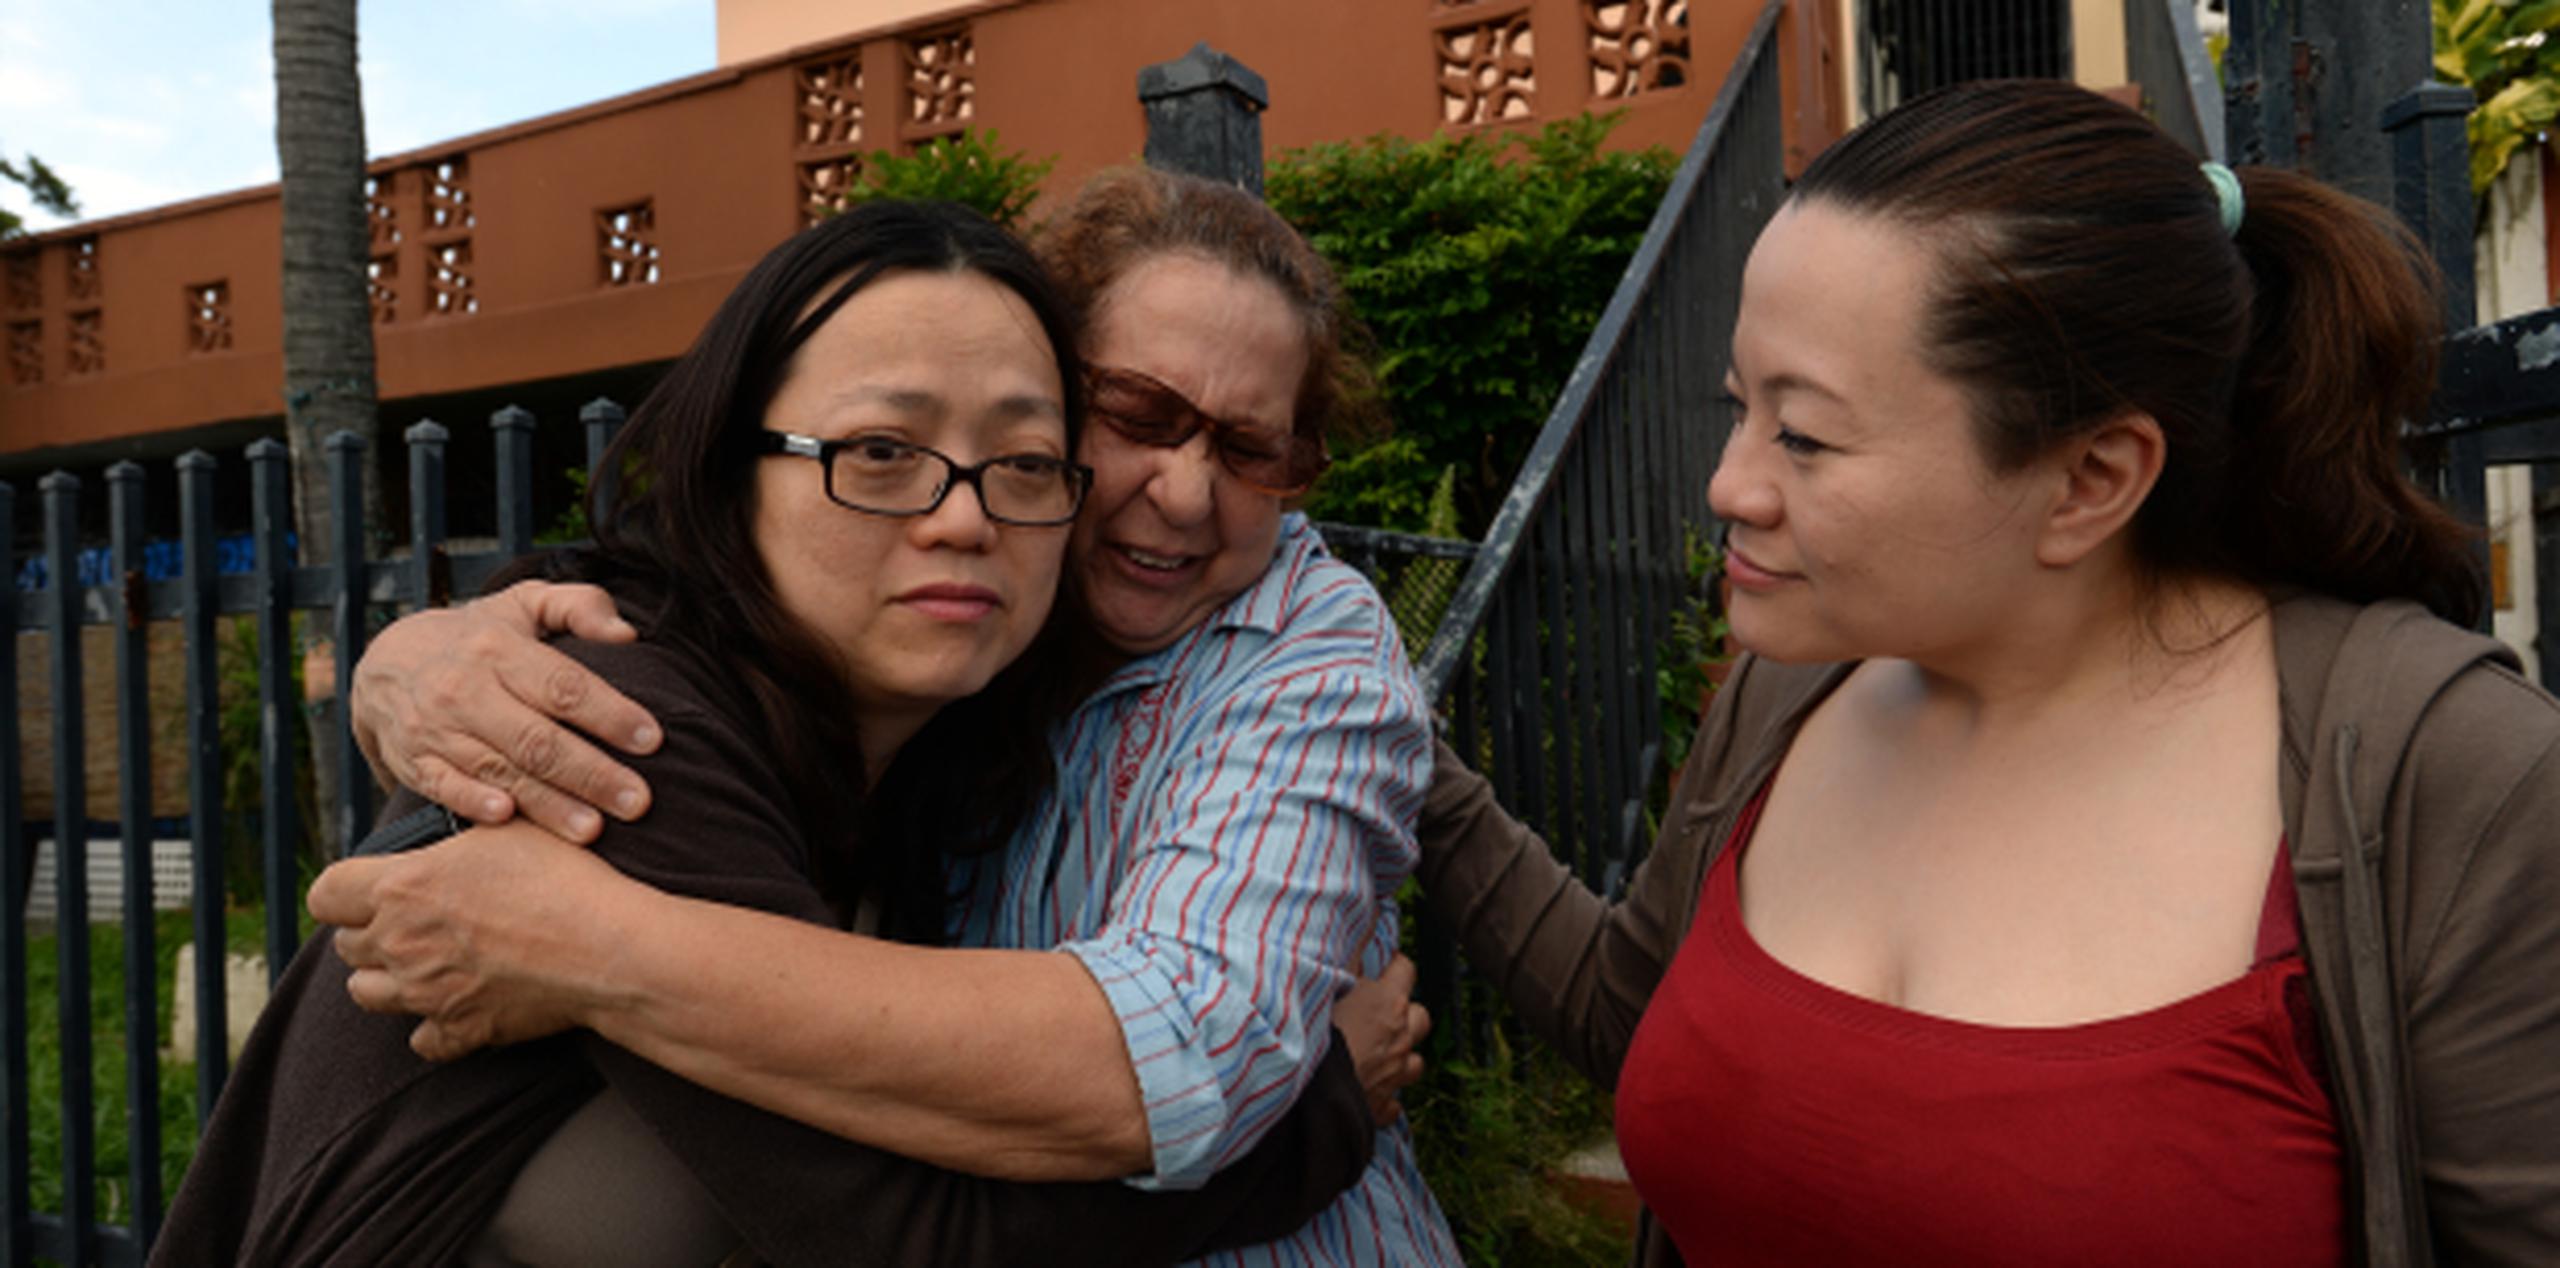 Alba Serrano, quien cuidó de Hong Kong hasta su muerte, abraza emocionada a Cathy, mientras Christina las observa. (ismael.fernandez@gfrmedia.com)